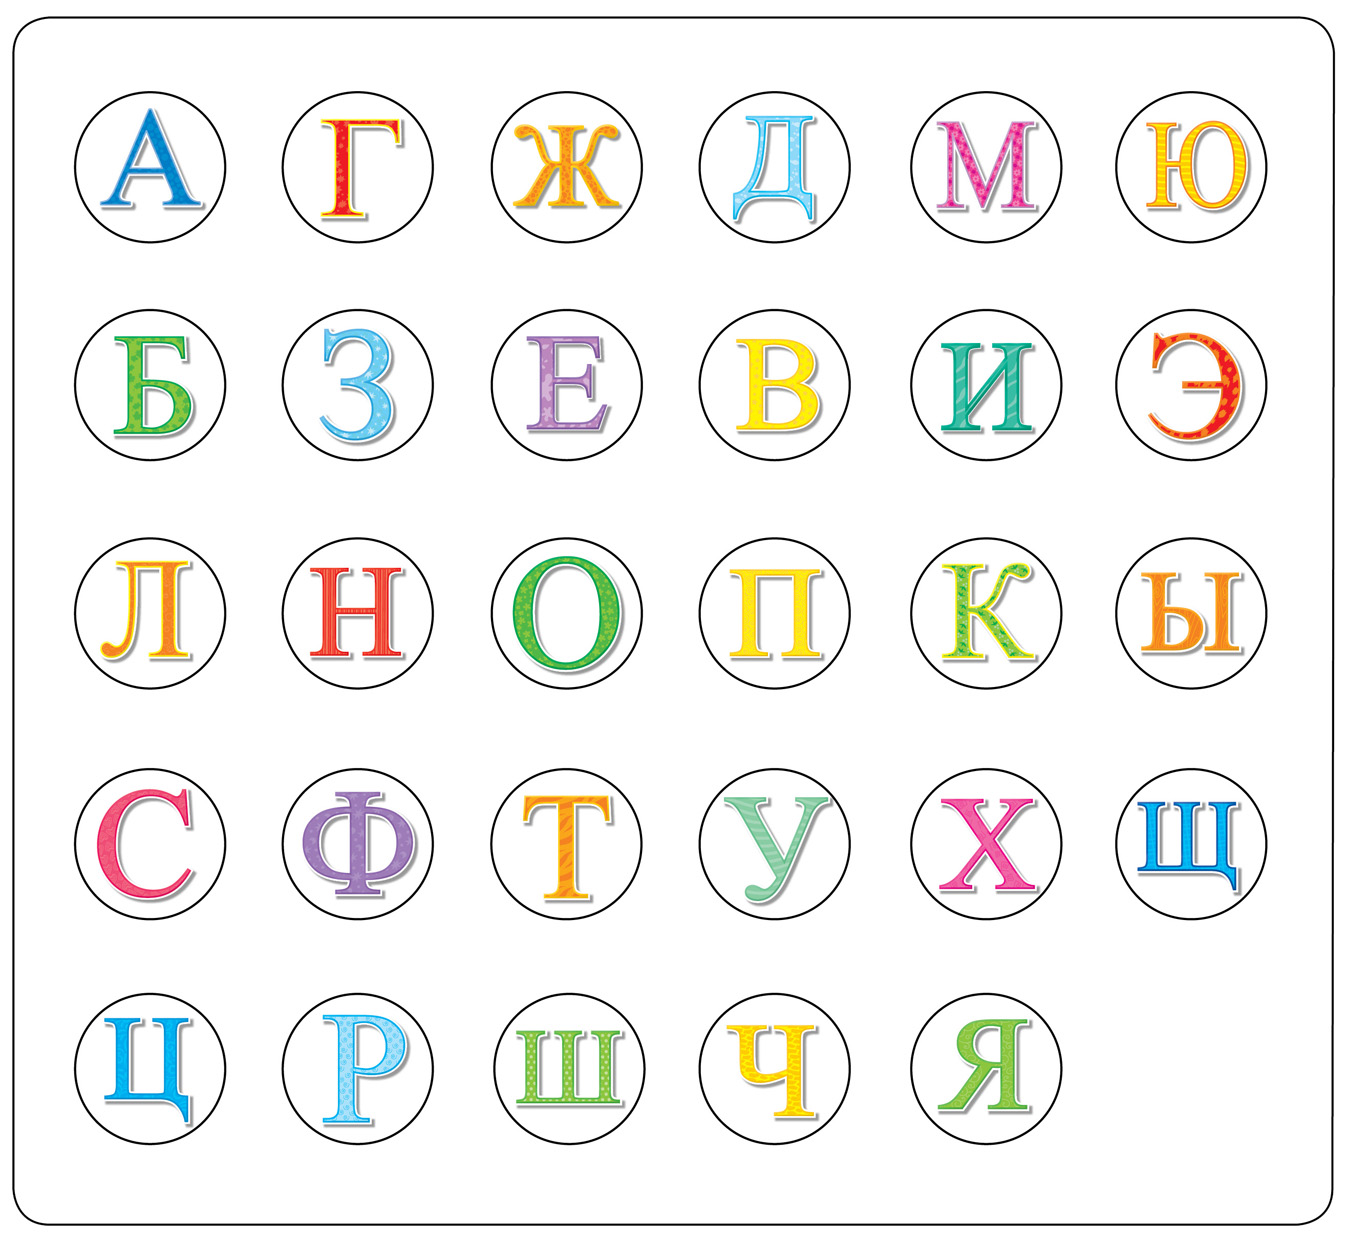 Русские буквы в кругах. Буквы русского алфавита в кружочках. Буквы алфавита в разброс. Буквы в кружочках для вырезания. Алфавит в кружочках для детей.